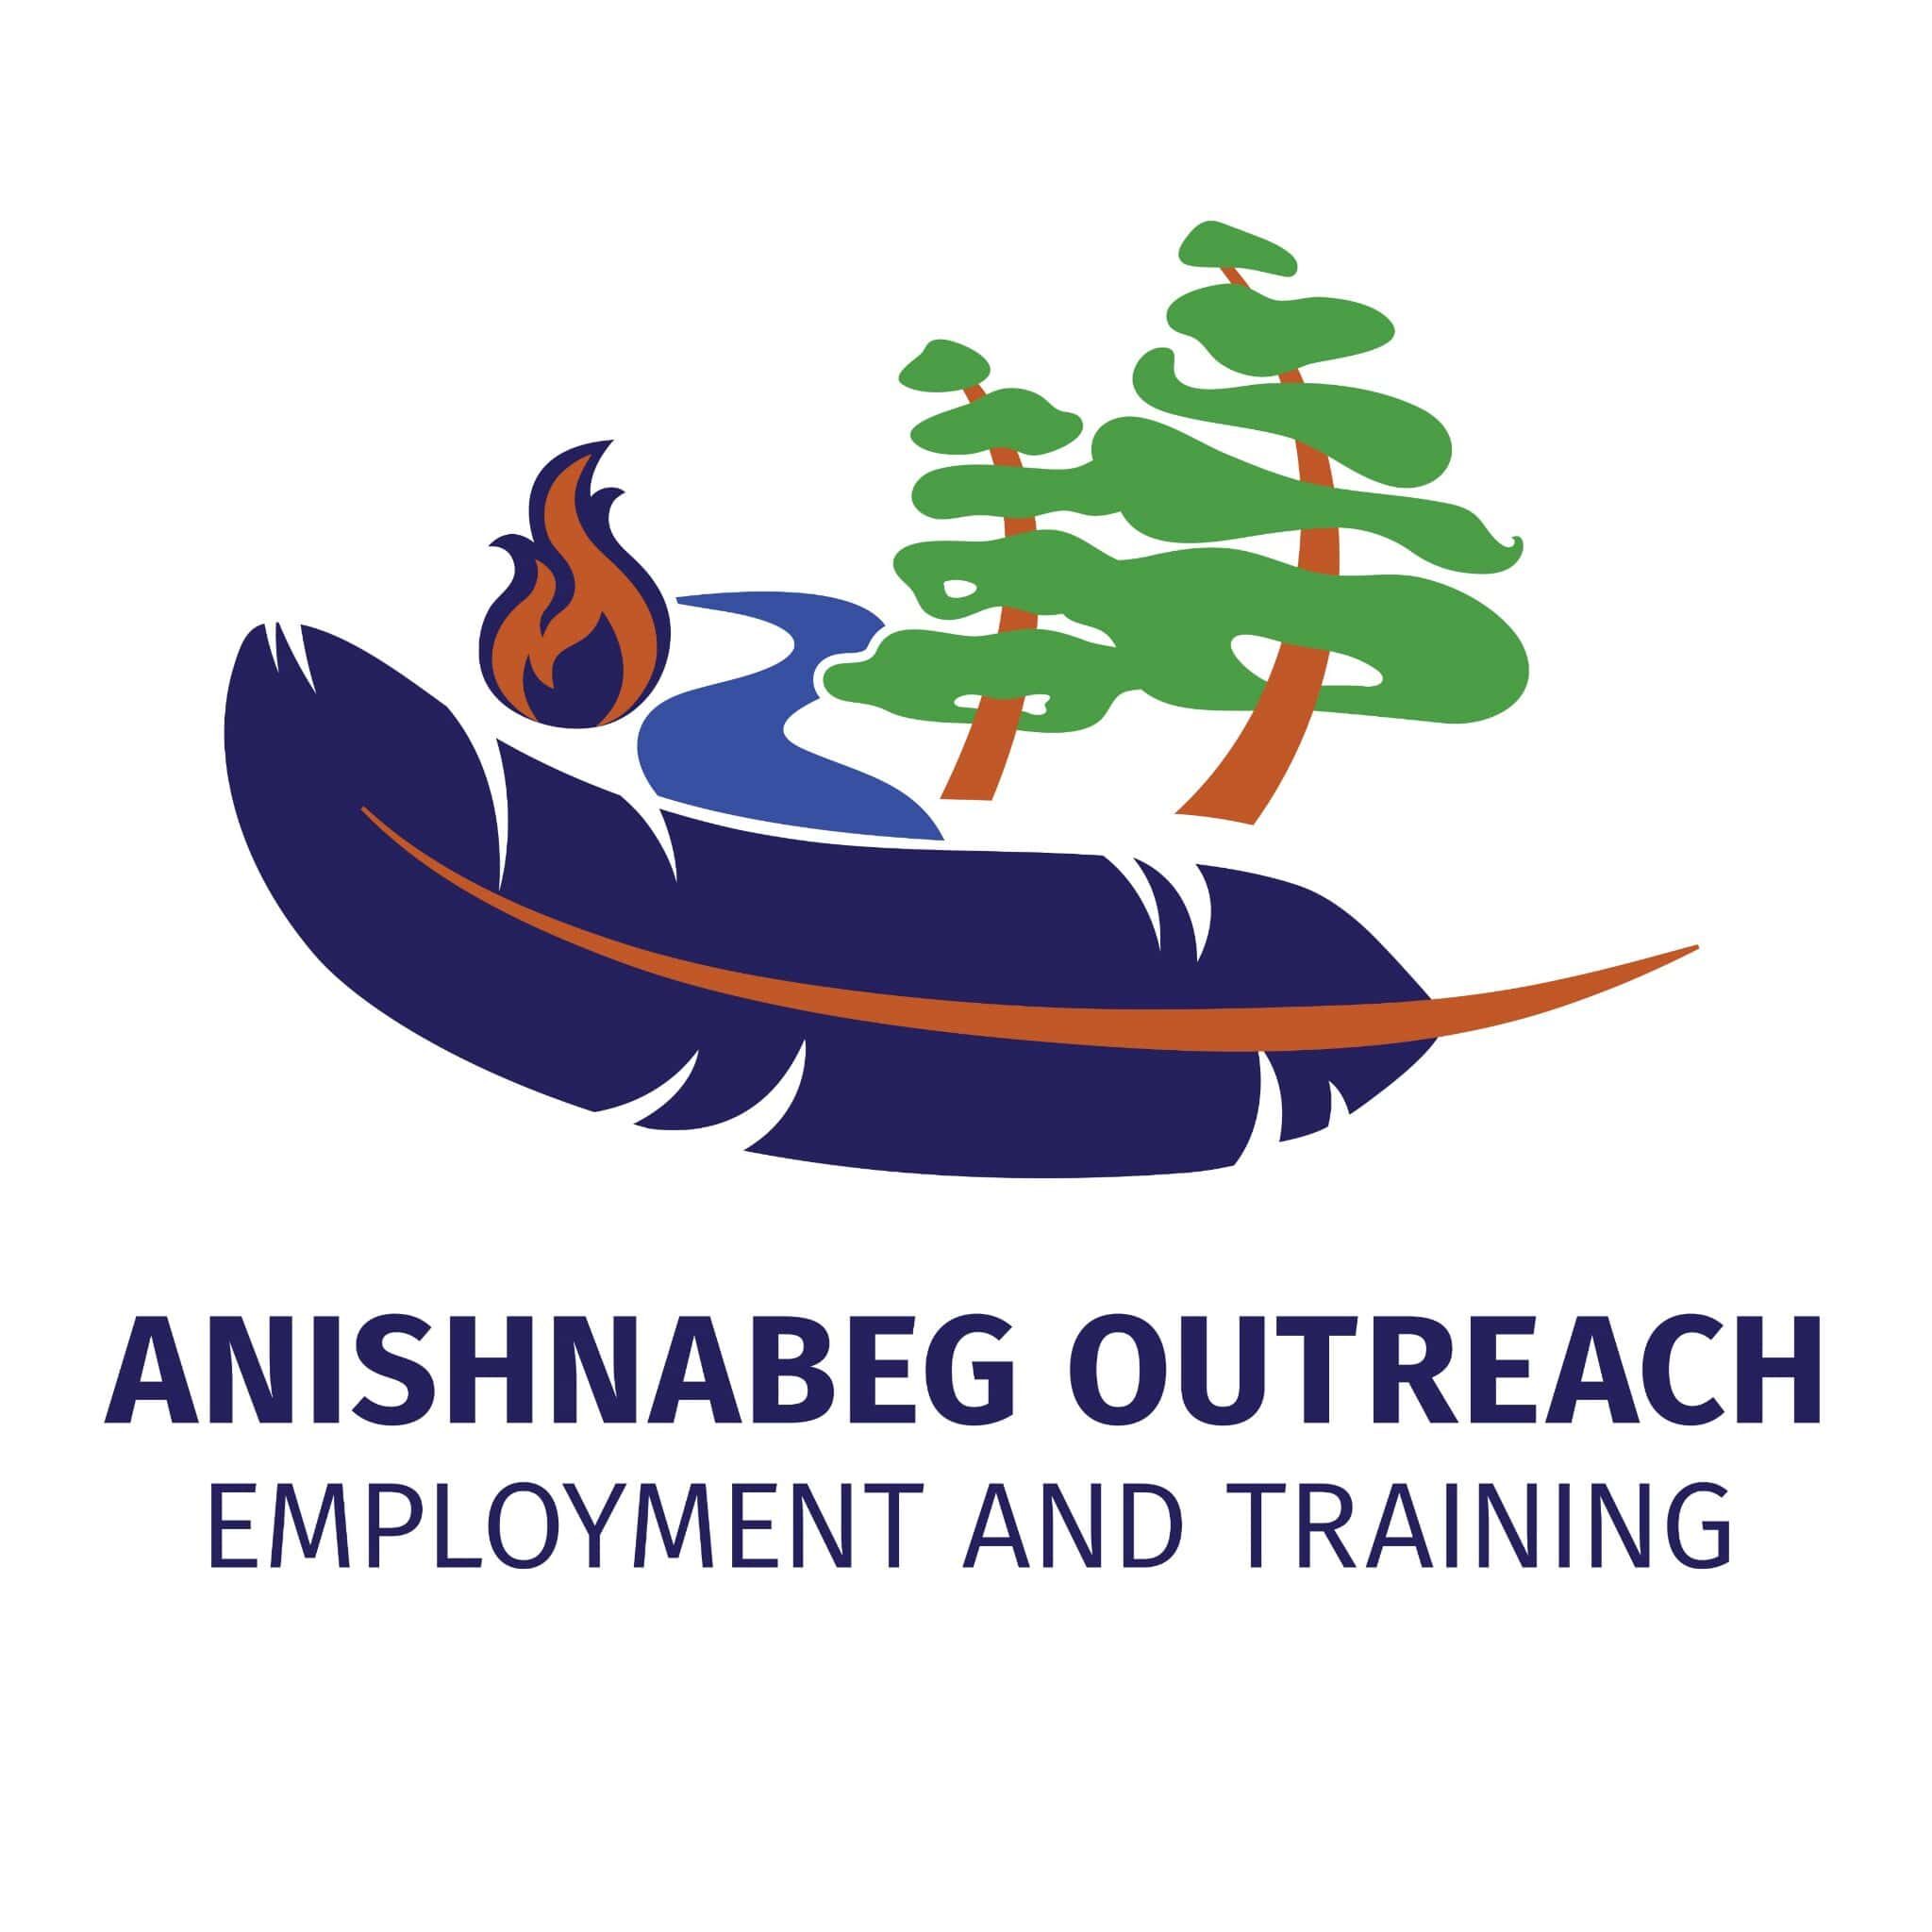 Anishnabeg Outreach